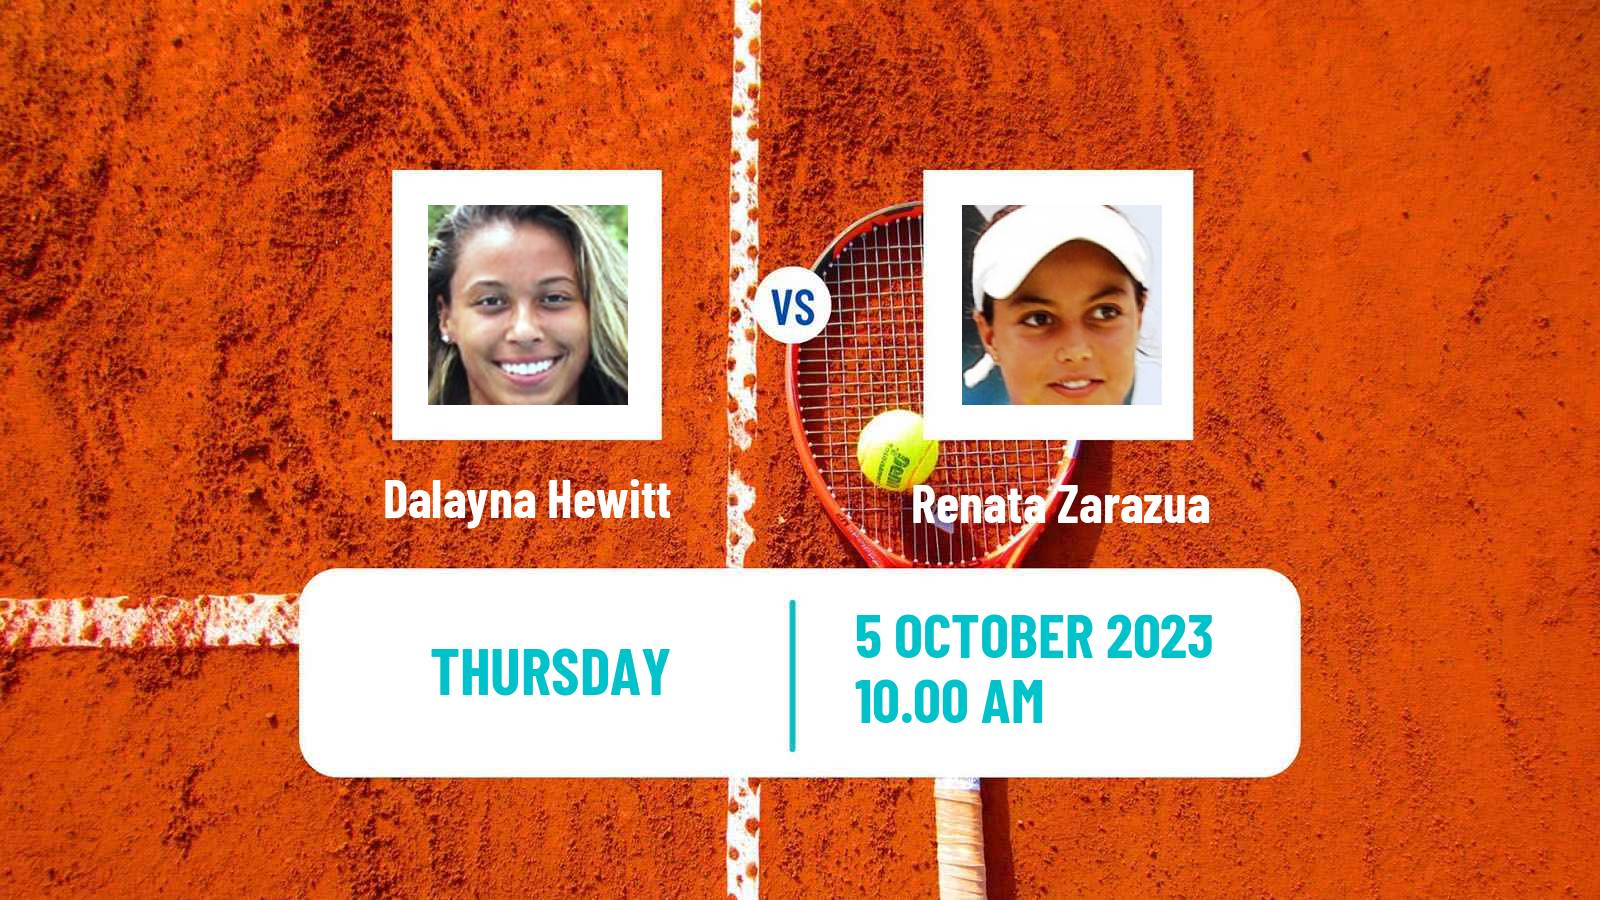 Tennis ITF W60 Rome Ga 2 Women Dalayna Hewitt - Renata Zarazua